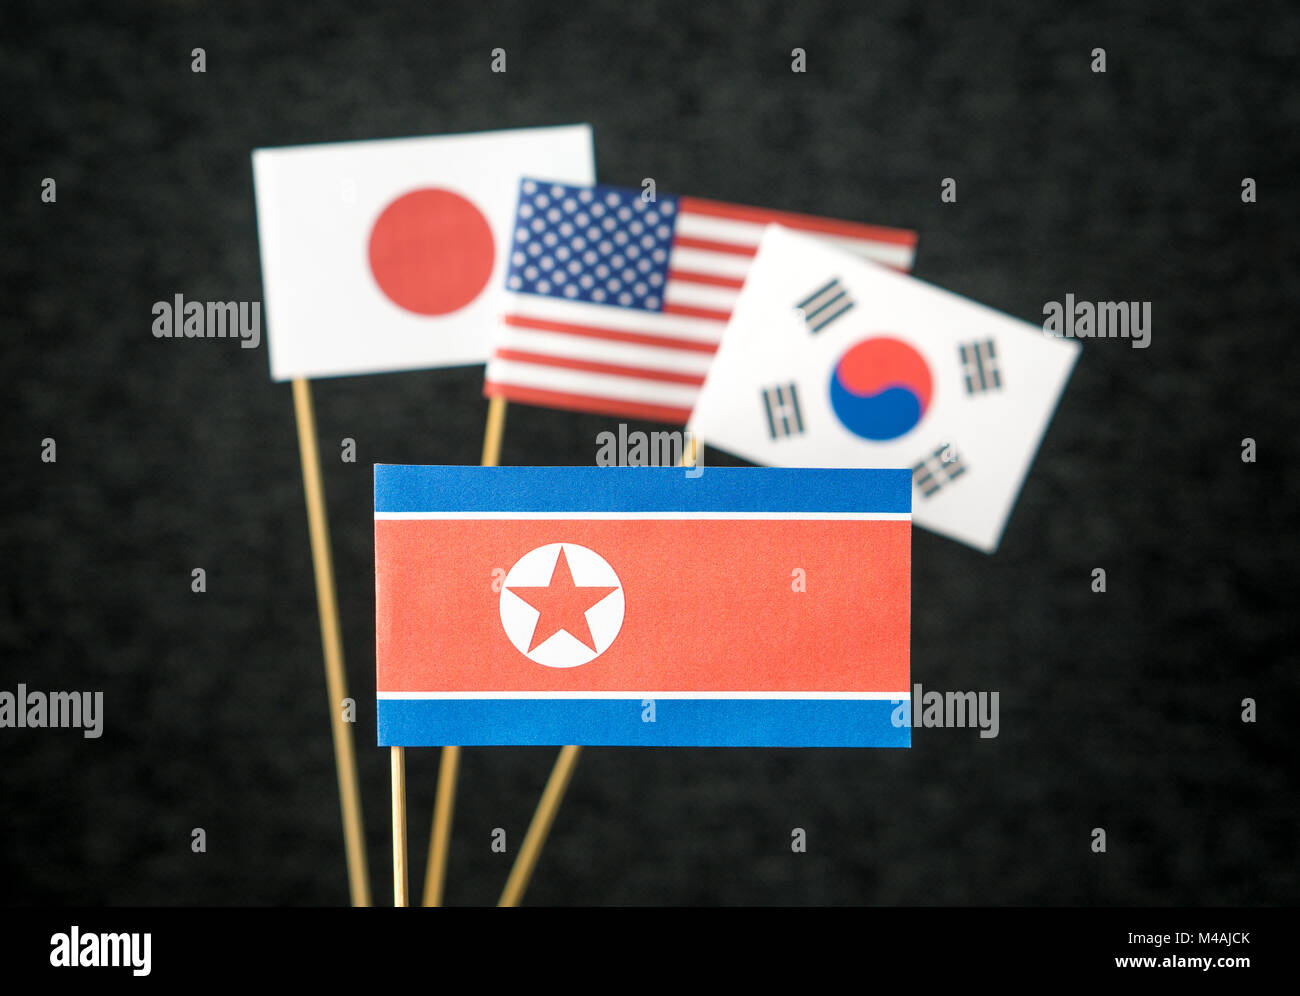 Le pavillon de la Corée du Nord, États-Unis d'Amérique (USA), la Corée du Sud et du Japon en papier sur bâtonnet de bois sur un fond sombre. Banque D'Images